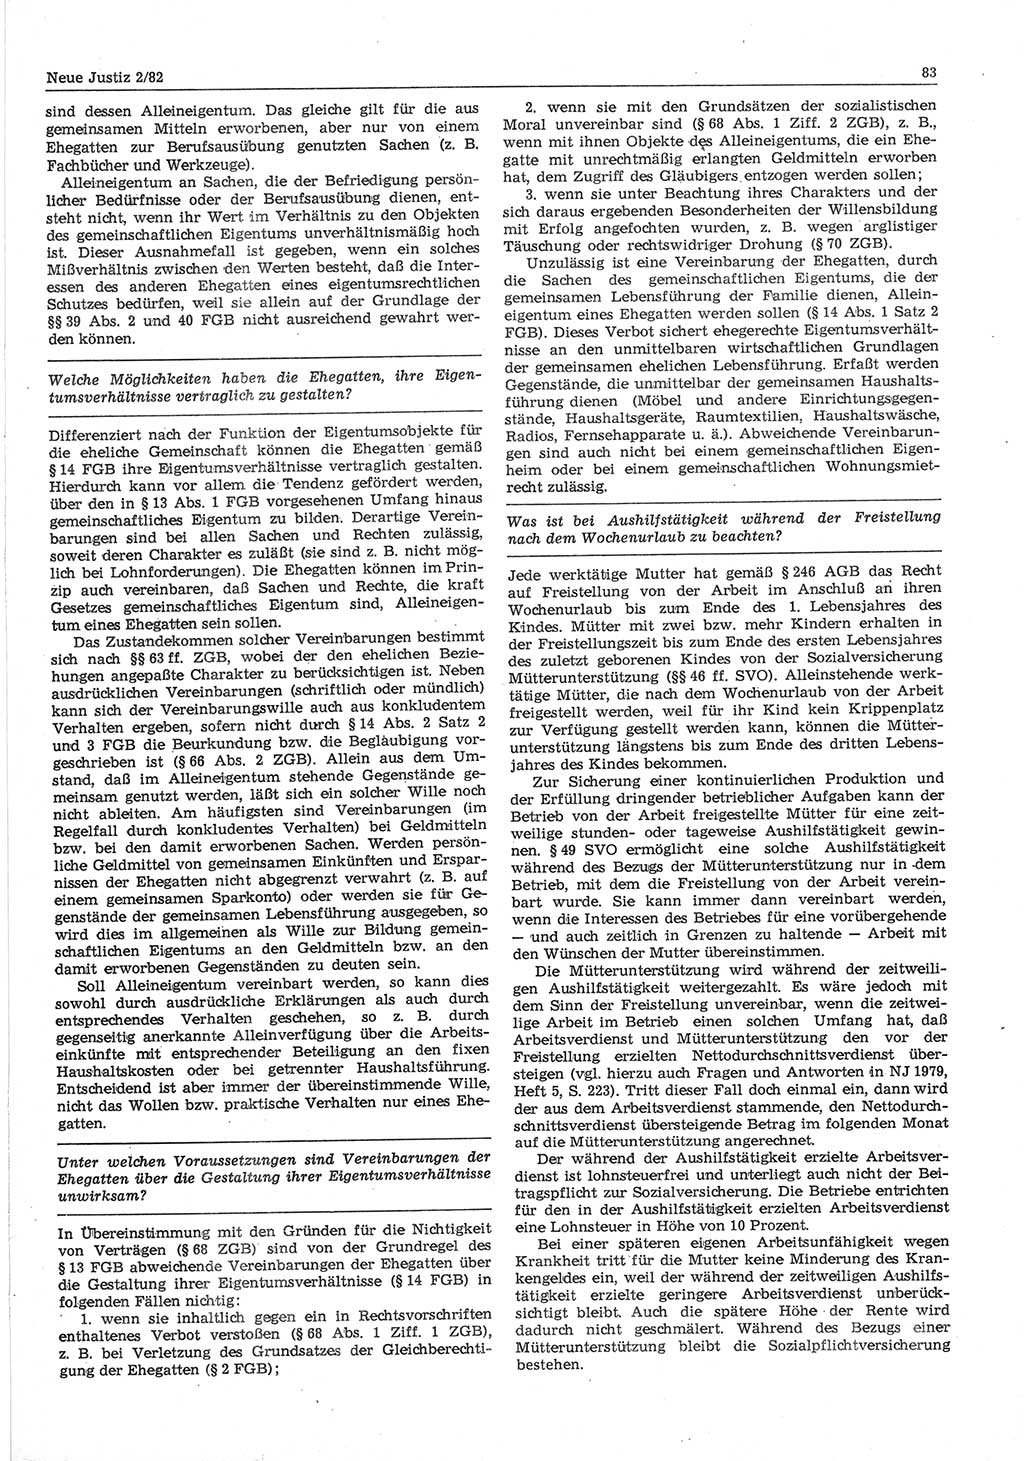 Neue Justiz (NJ), Zeitschrift für sozialistisches Recht und Gesetzlichkeit [Deutsche Demokratische Republik (DDR)], 36. Jahrgang 1982, Seite 83 (NJ DDR 1982, S. 83)